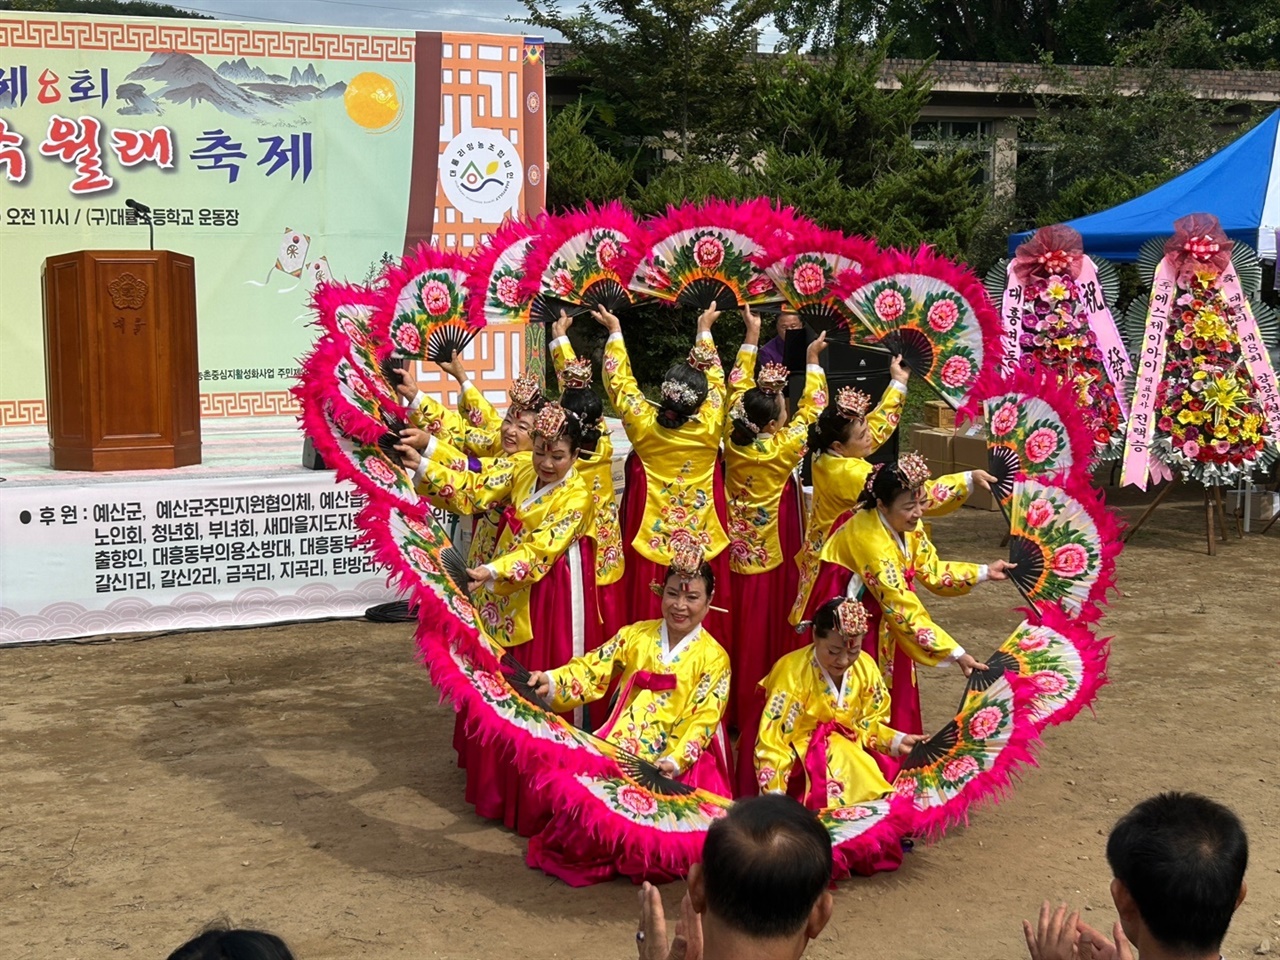 본격적인 강강술래에 앞서, 예산군농업기술센터 전통무용동아리의 부채춤 공연이 이어졌다. 